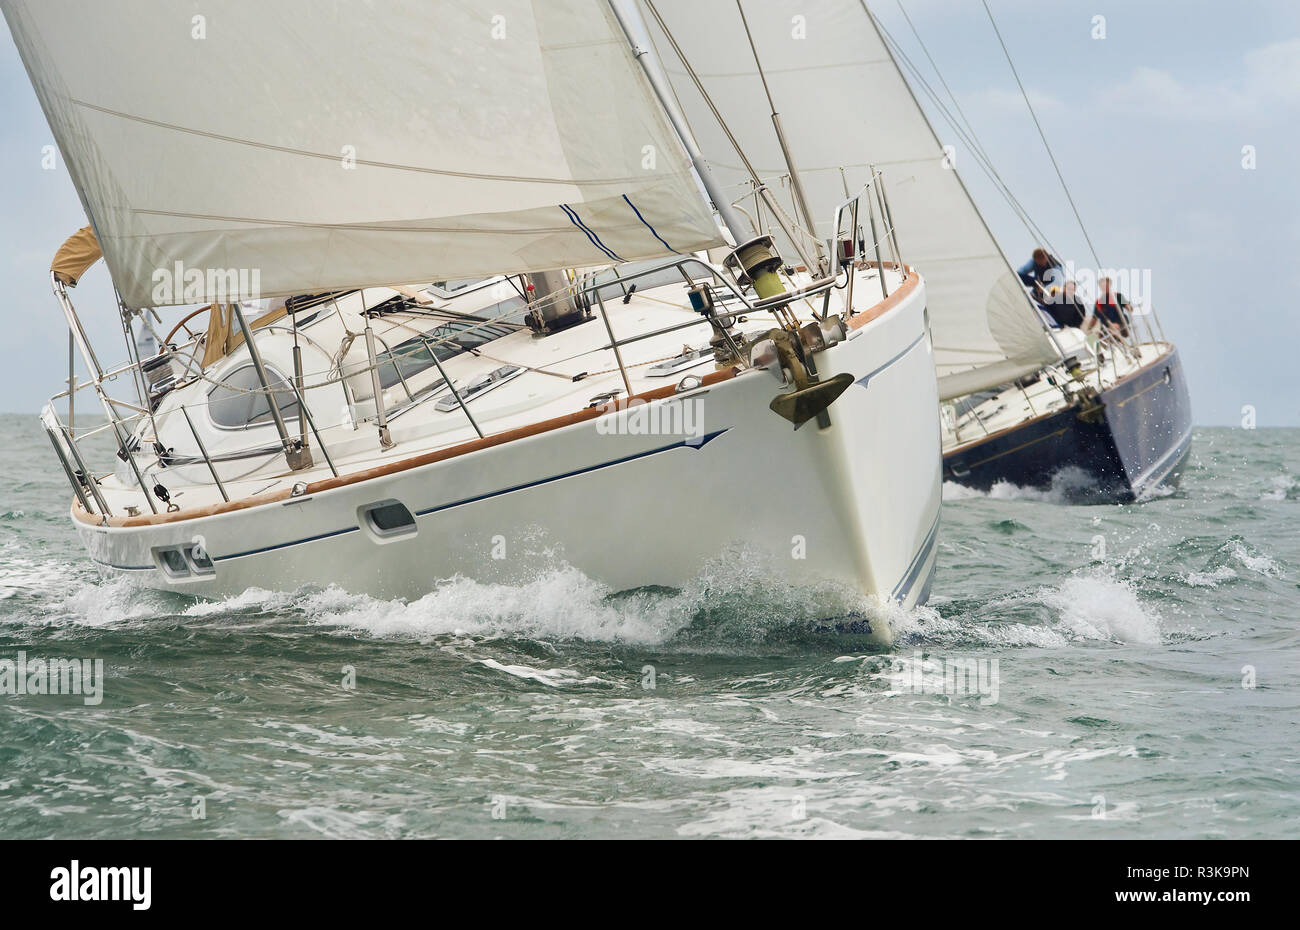 Two beautiful white yachts, sailboats or sail boats sailing or racing at sea Stock Photo